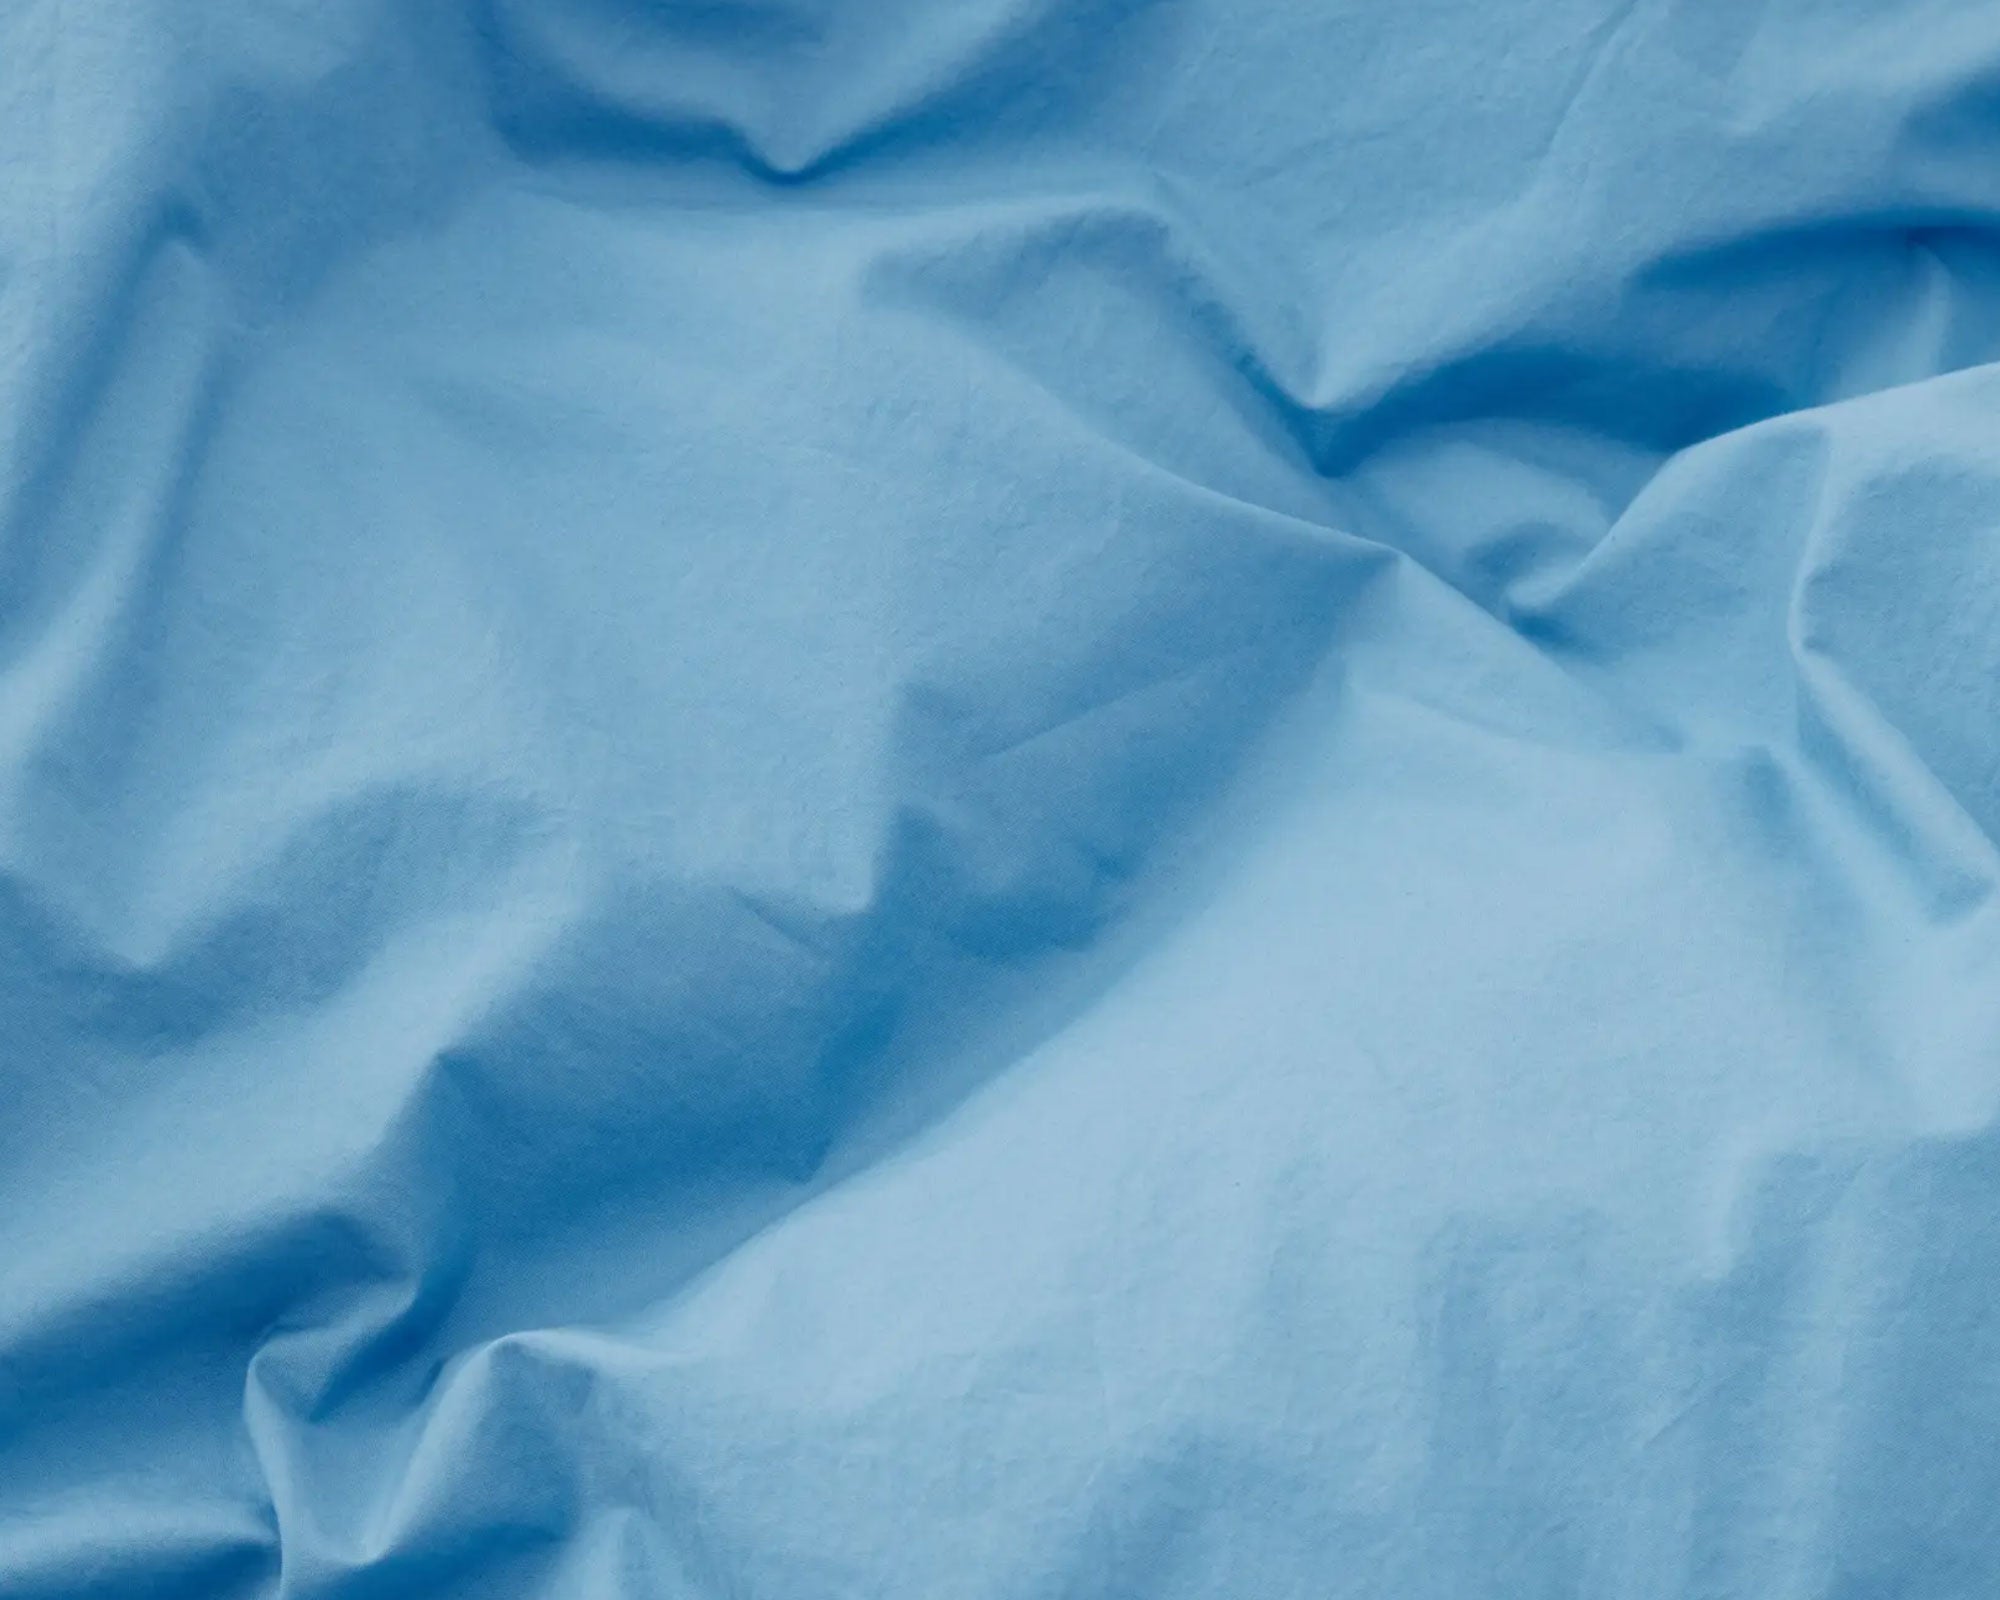 Tekla Cotton Percale Bedding - Dove Blue